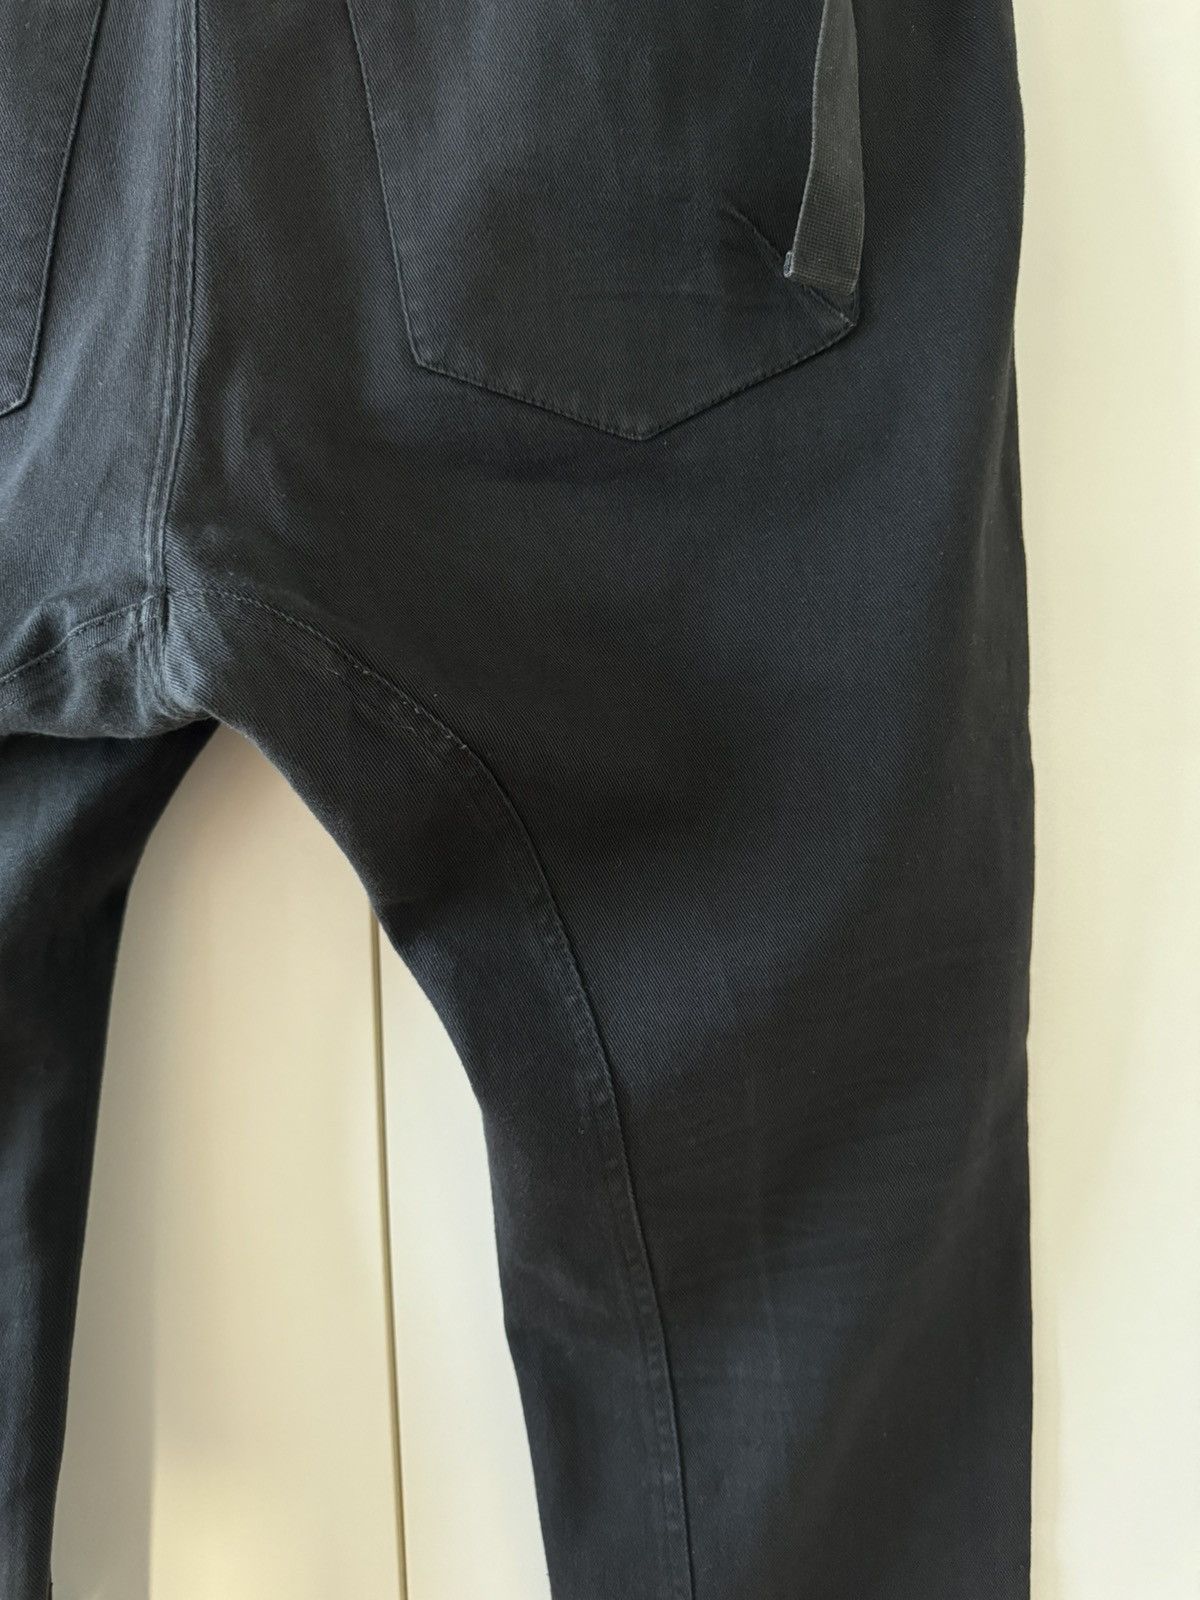 Alexandre Plokhov Alexandre Plokhov Asymmetrical Drop-crotch Pants FW14 50 Size US 34 / EU 50 - 7 Thumbnail